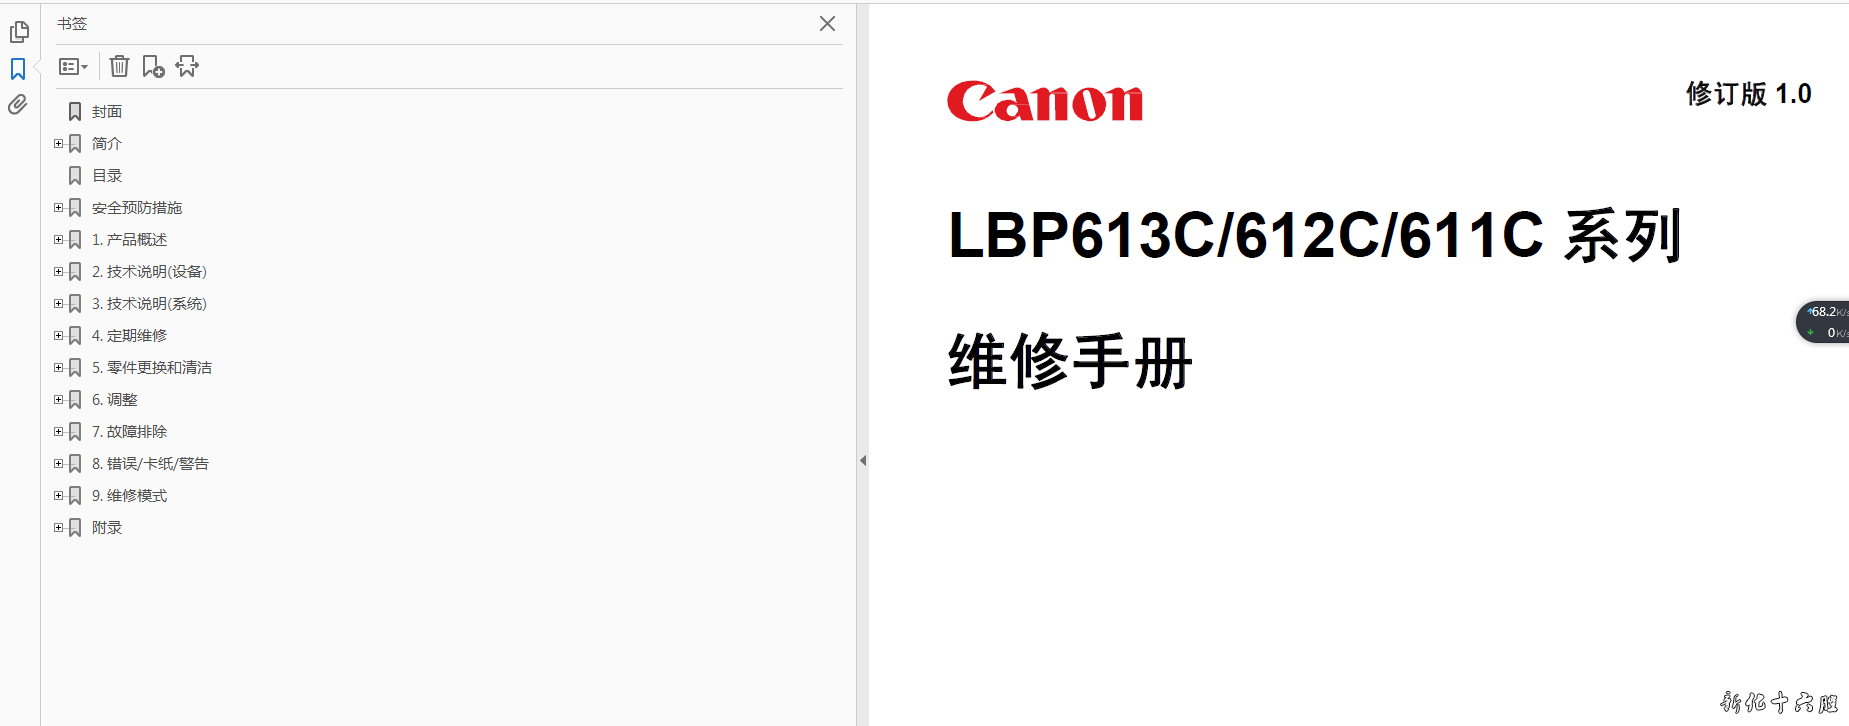 佳能LBP613C,612C,611C中文维修手册.png